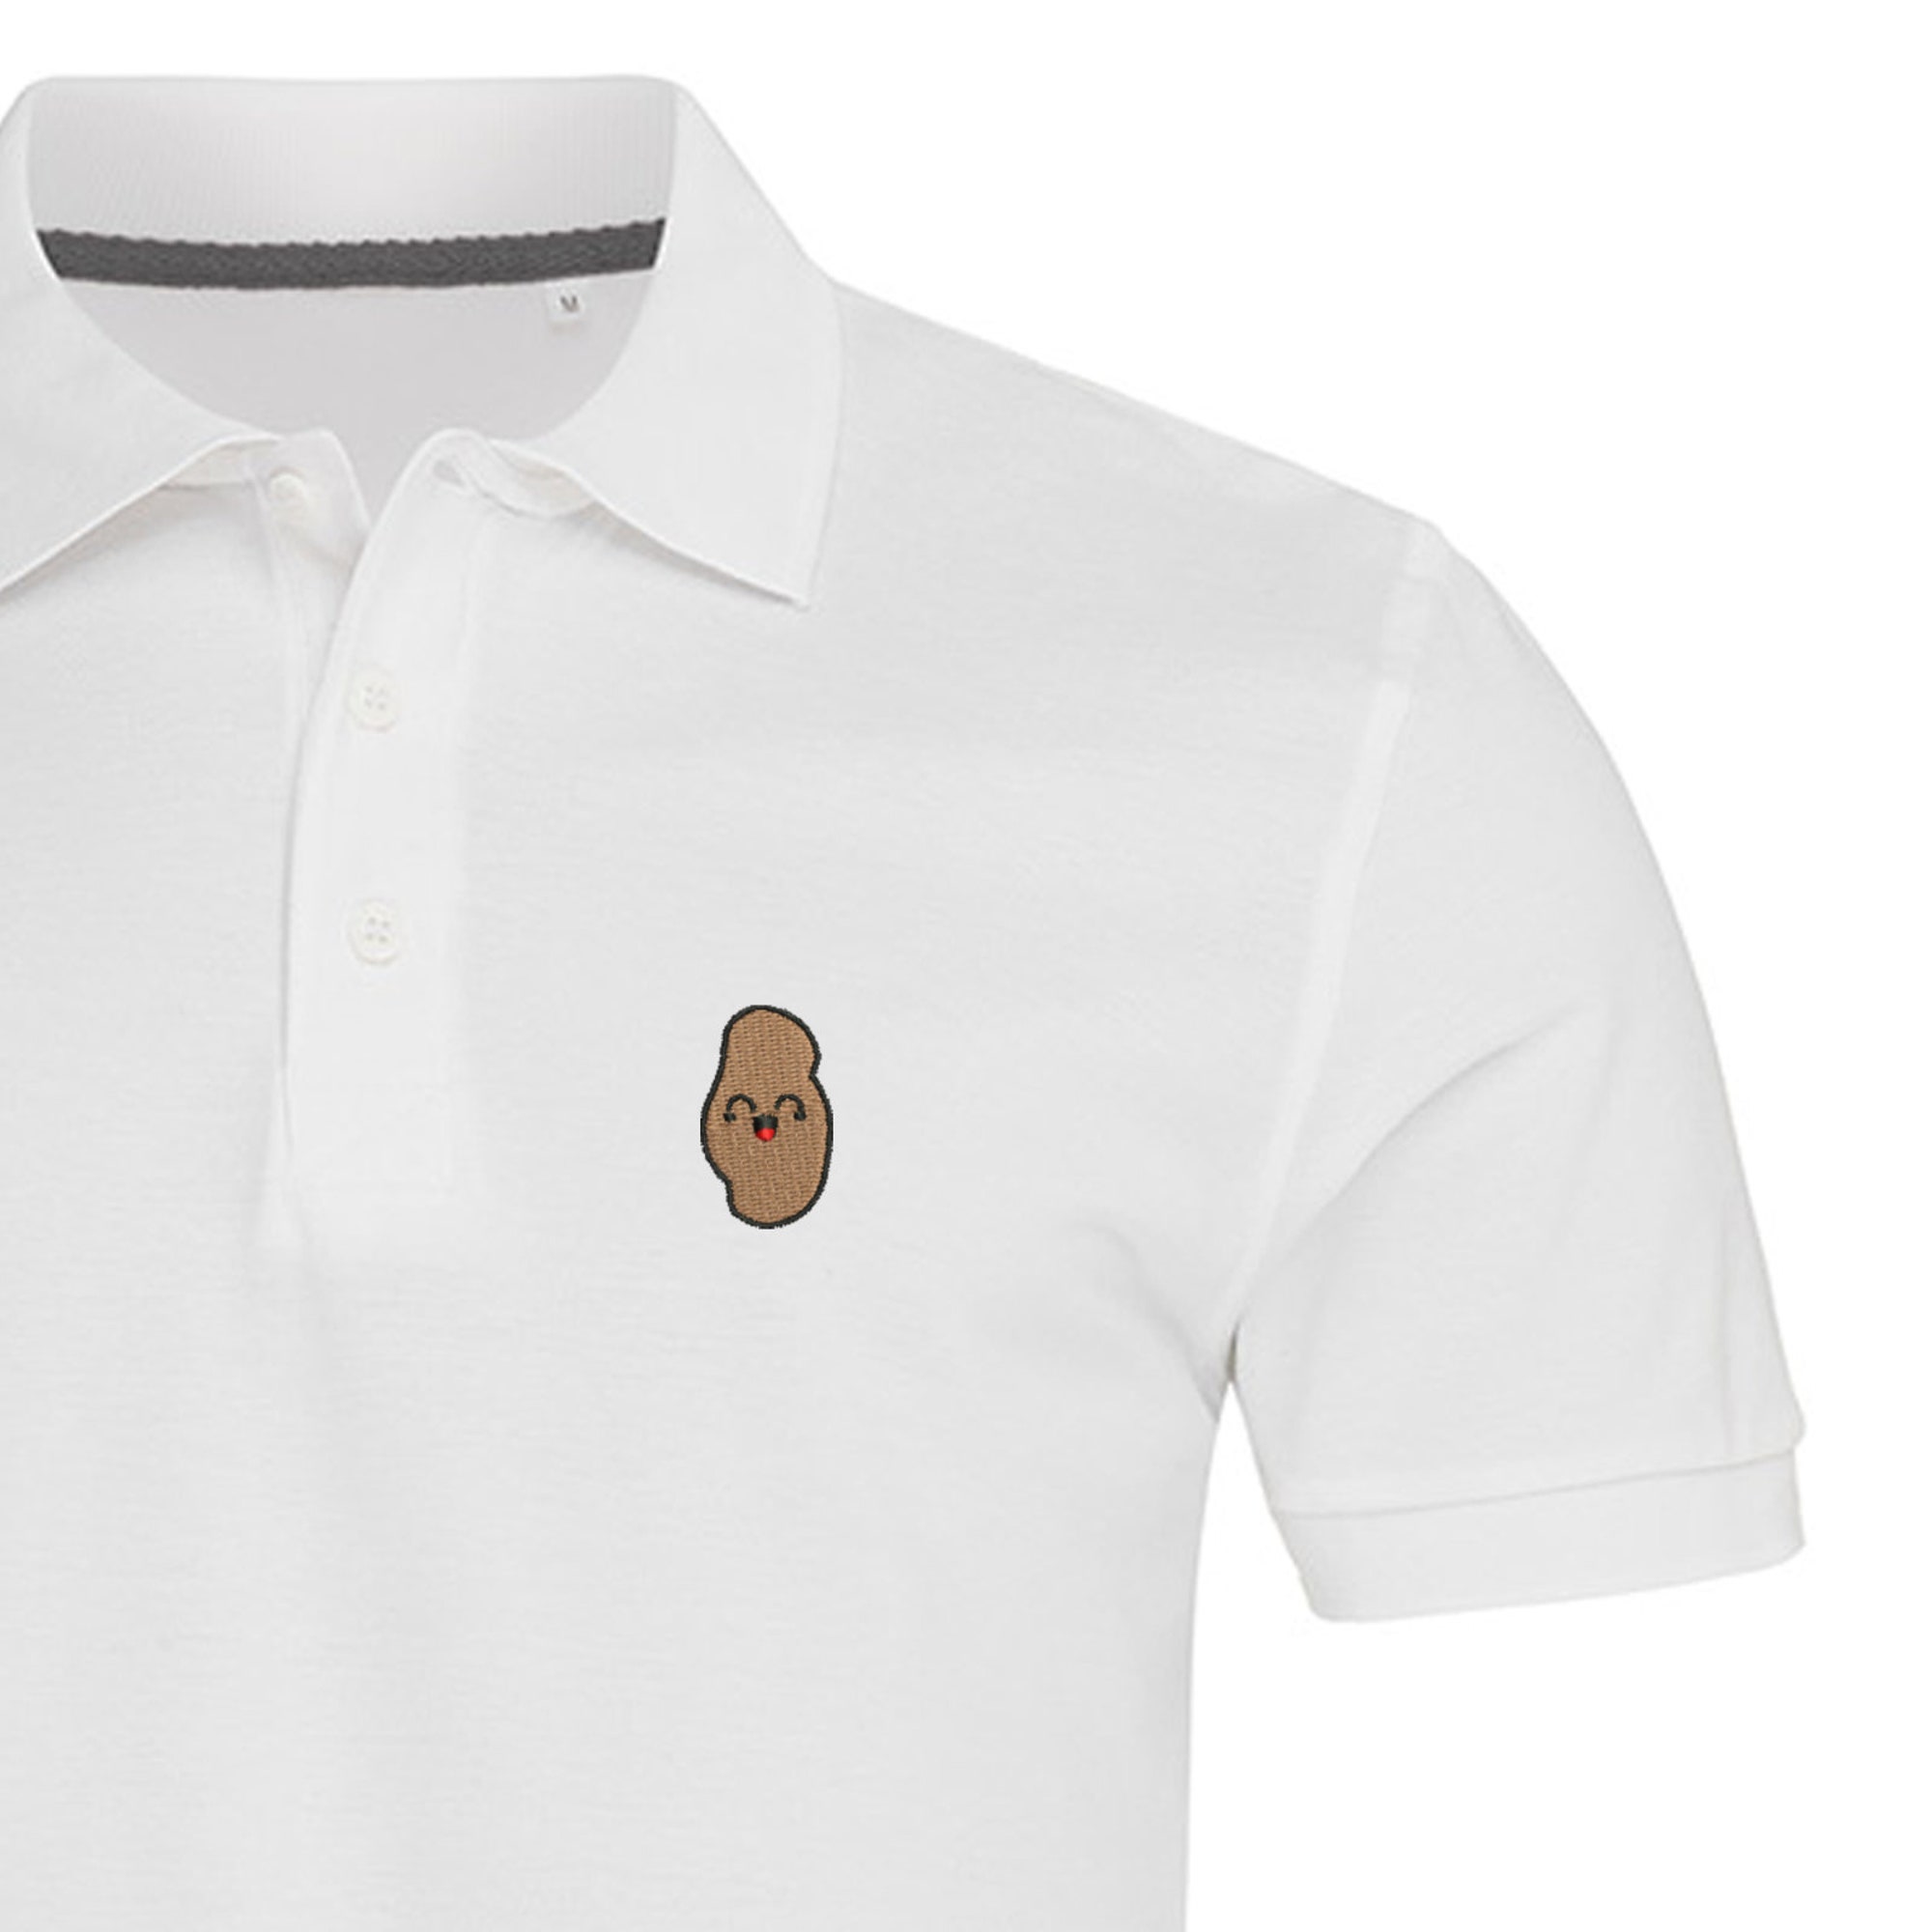 Discover Potato Embroidered Polo Shirt For Man | Poloshirt